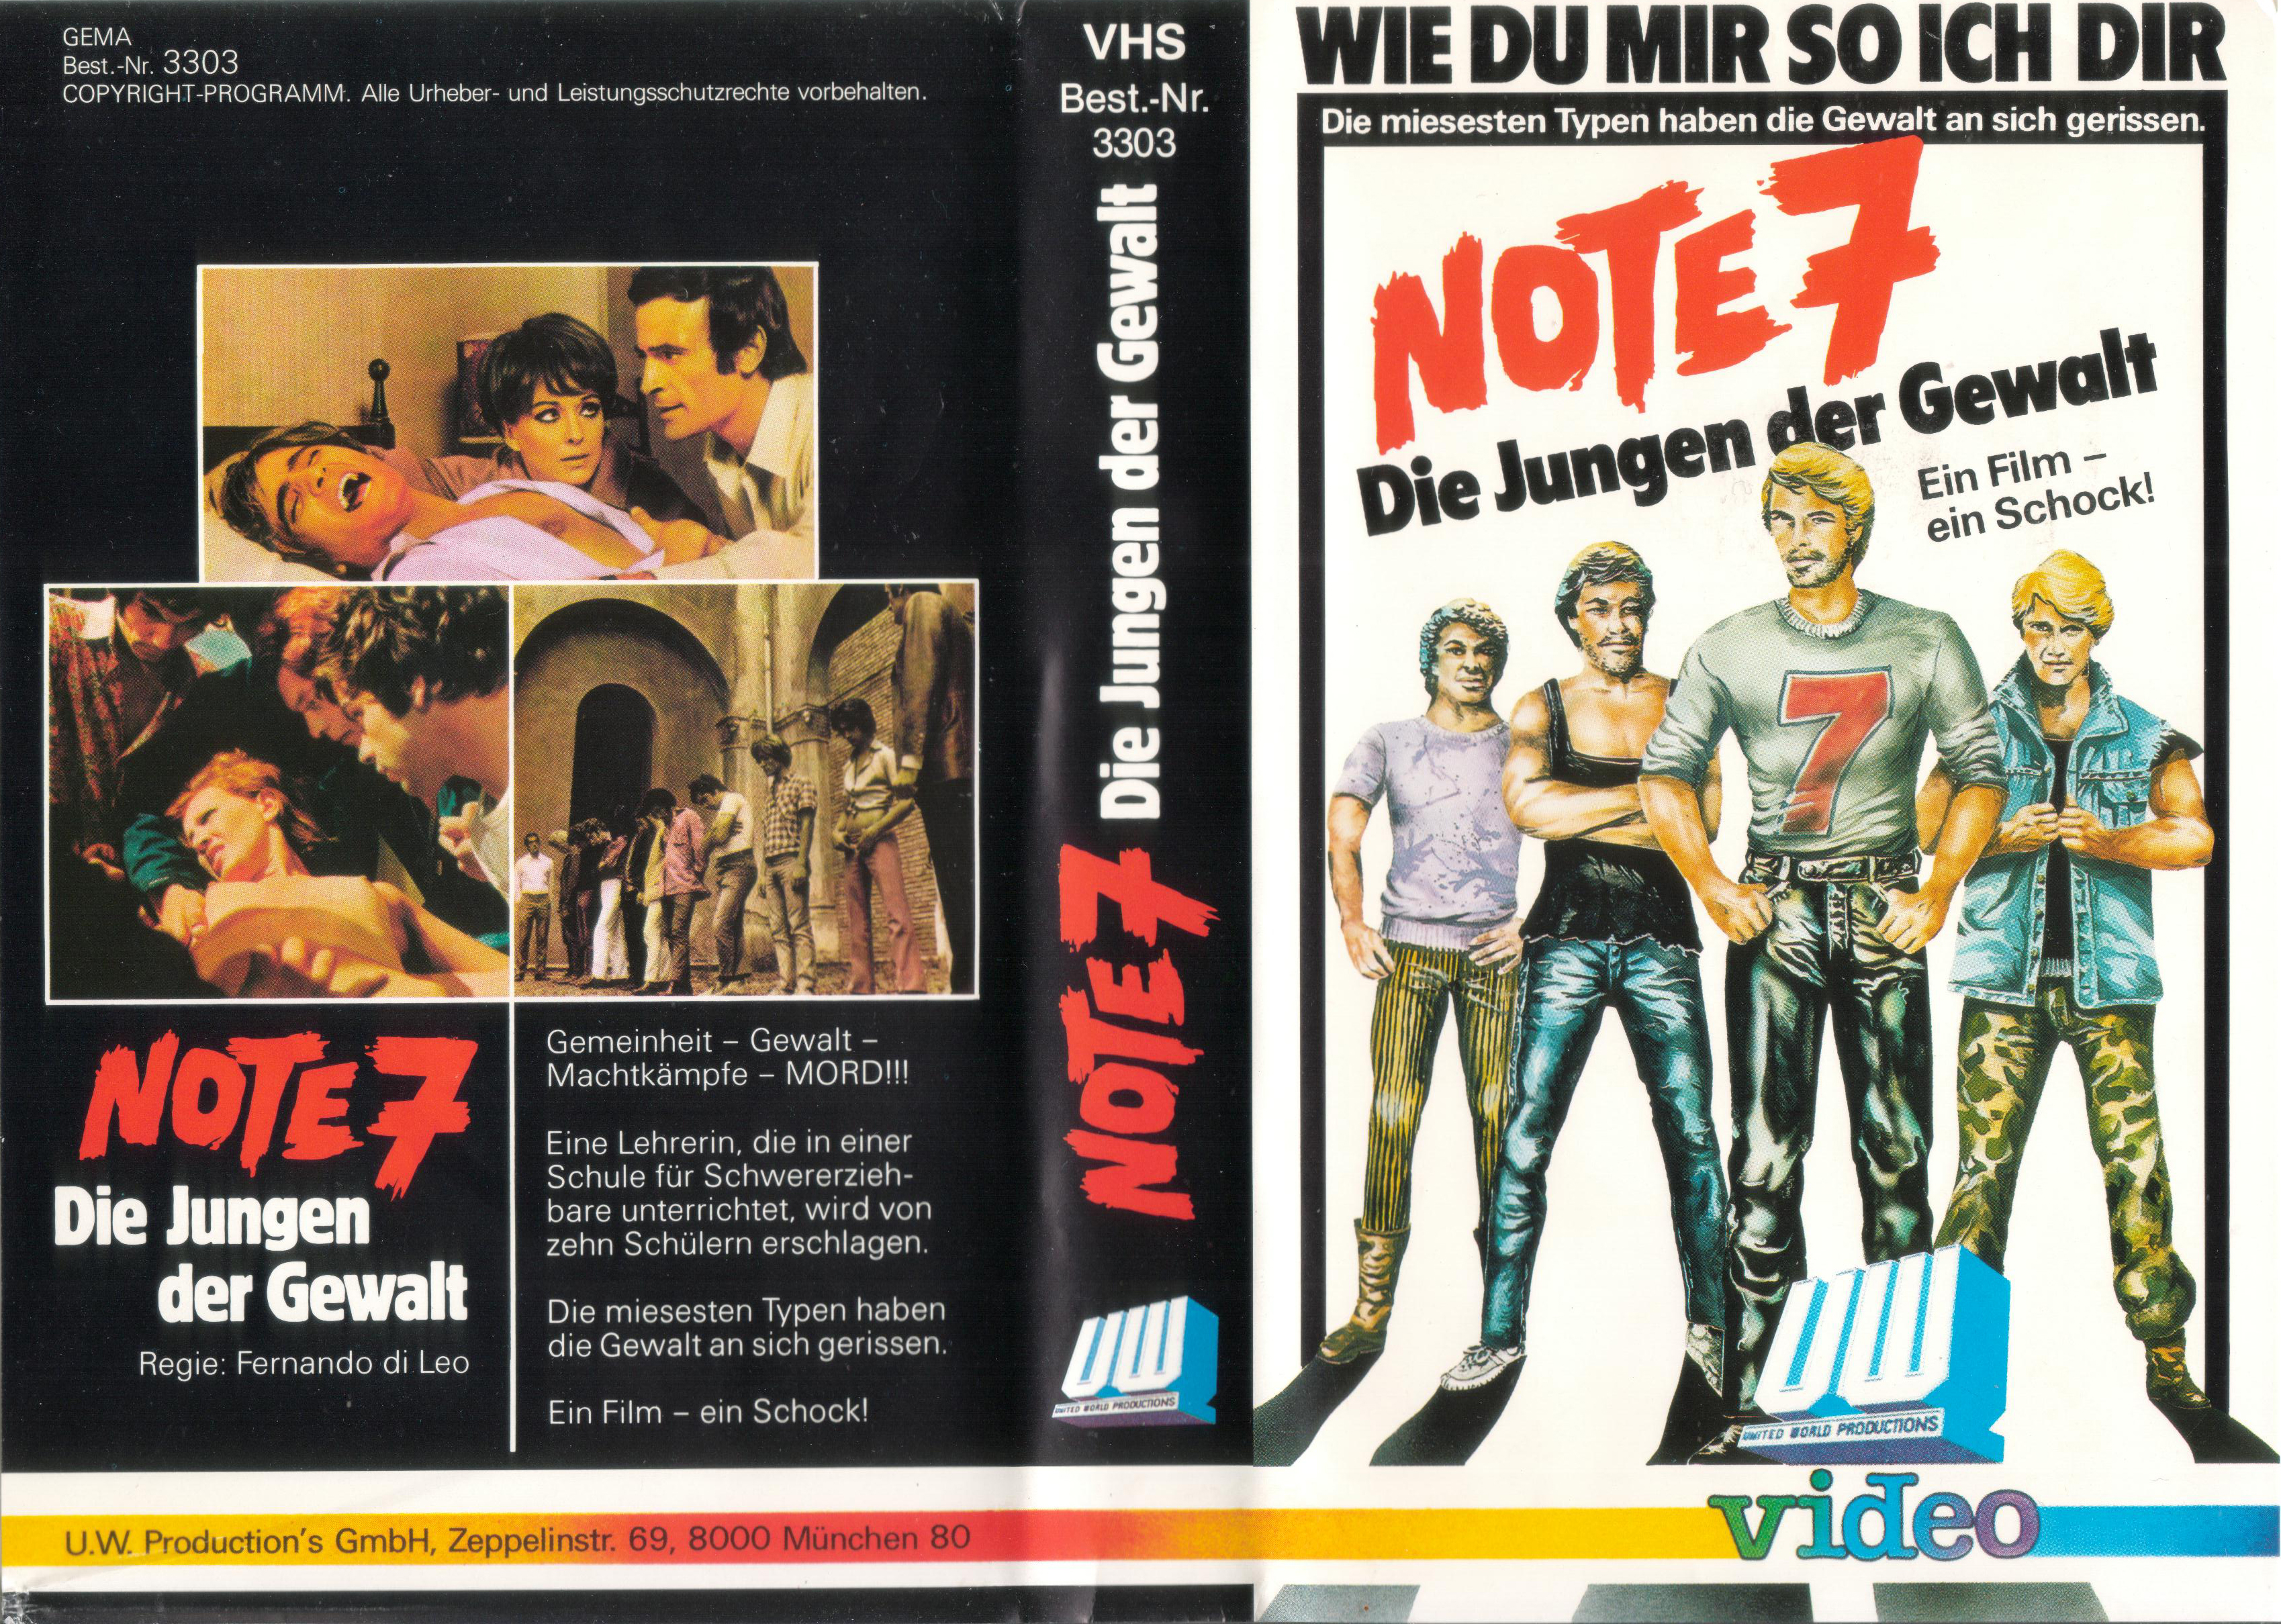 Note 7 - Die Jungen der Gewalt VHS-Cover (eigene Sammlung).jpg